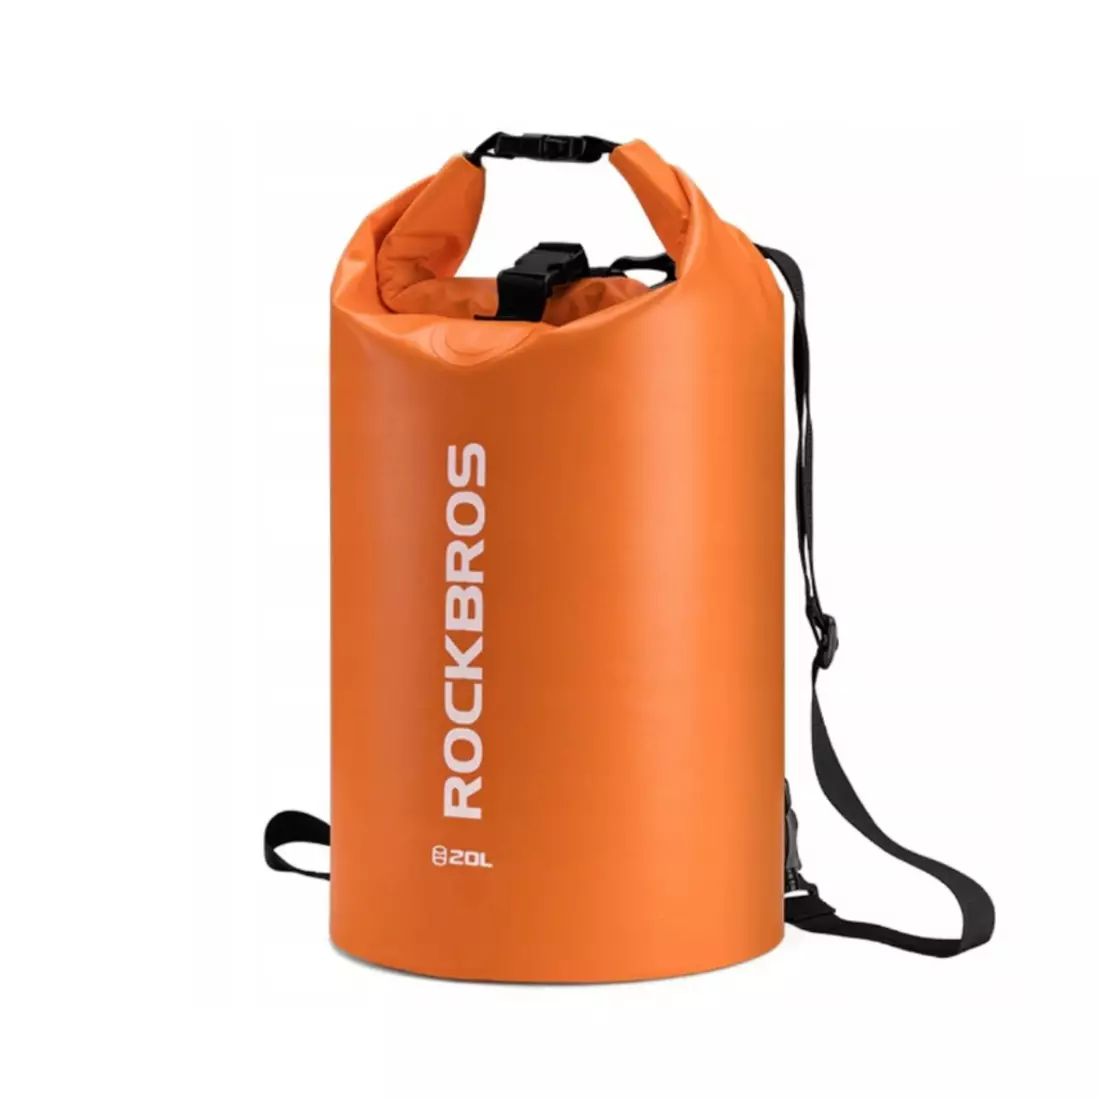 Rockbros Vodeodolný batoh / taška 10L, oranžová ST-005OR